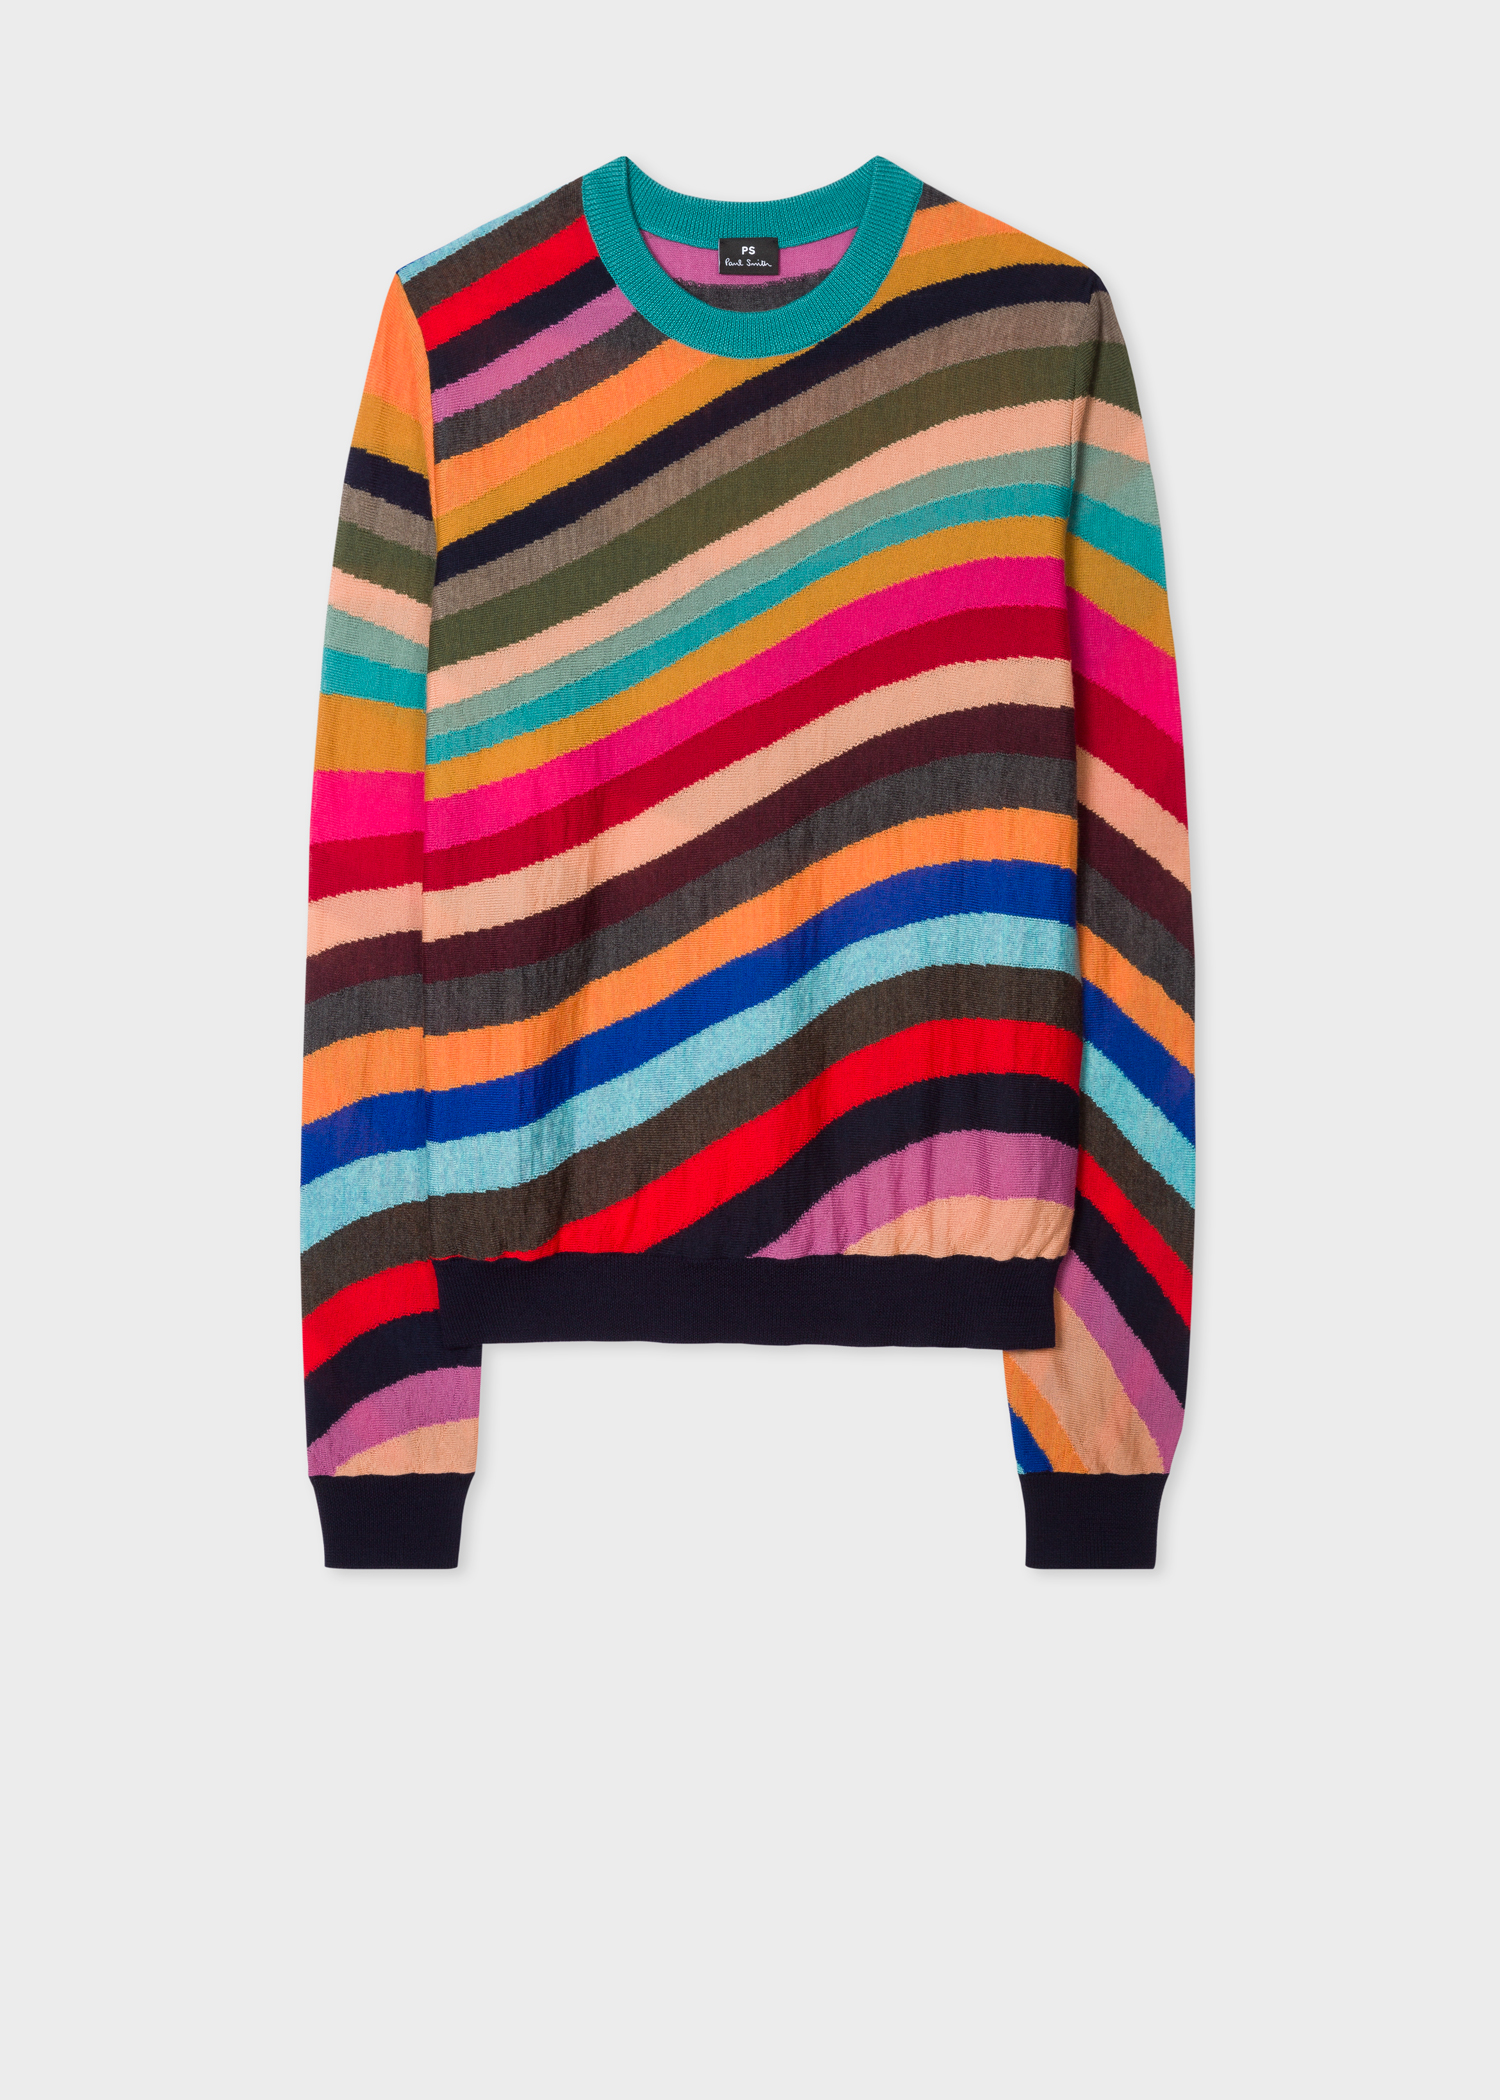 Women's 'Swirl' Intarsia Wool Sweater - Paul Smith